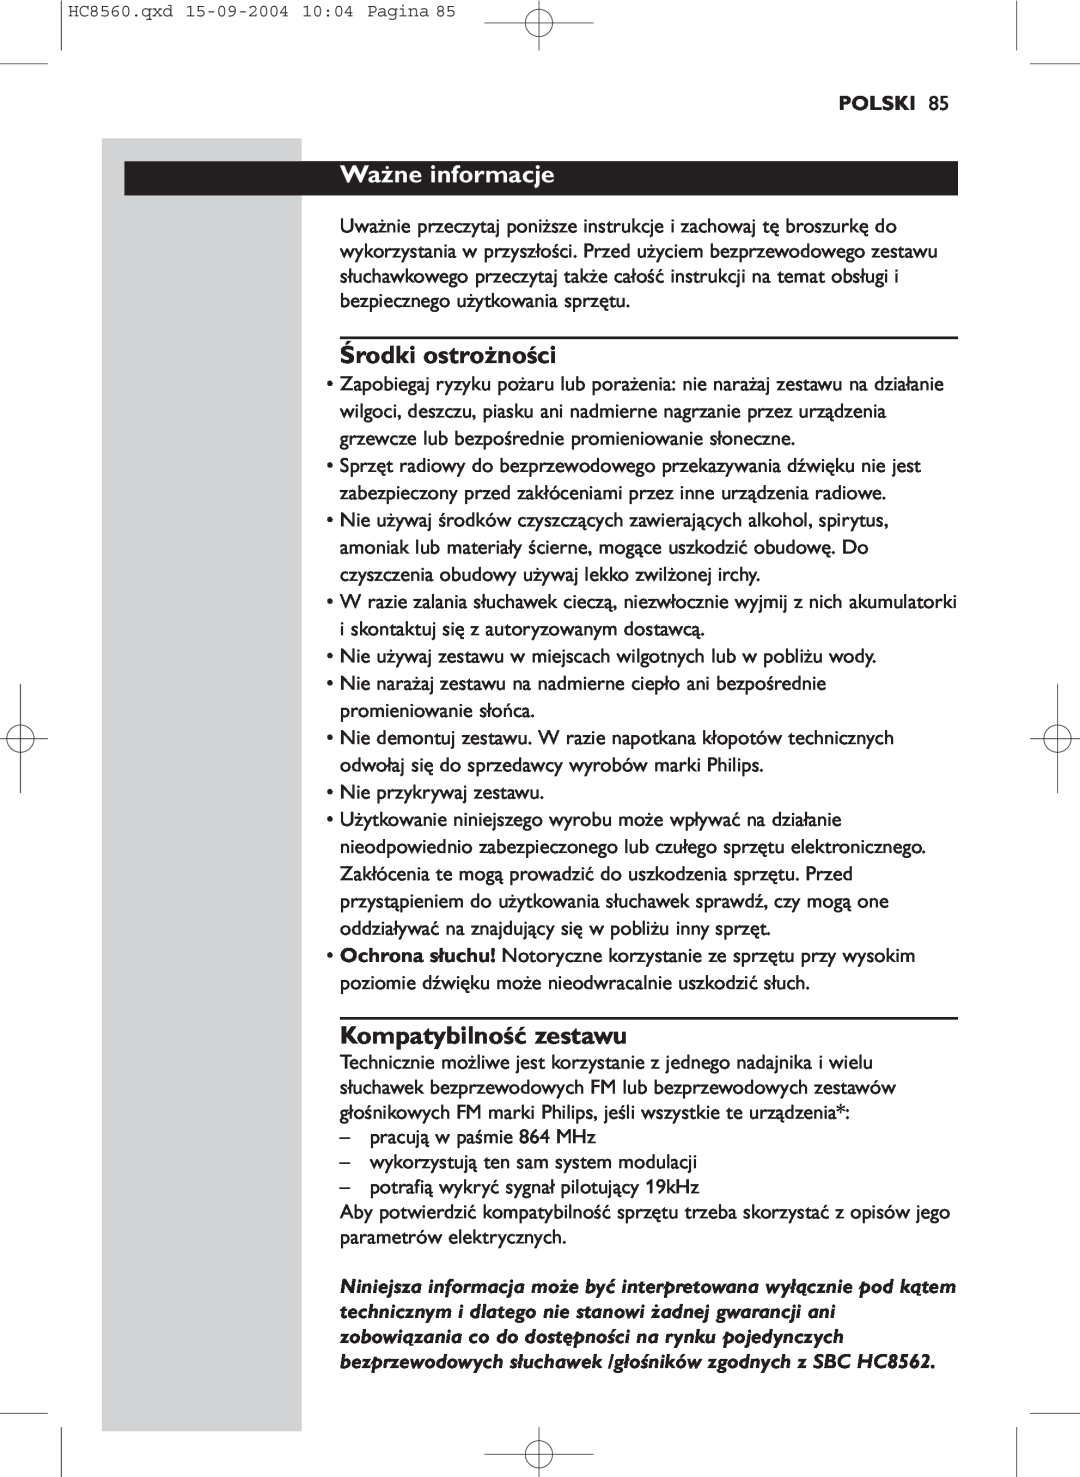 Philips HC 8560 manual Ważne informacje, Środki ostrożności, Kompatybilność zestawu, Polski 